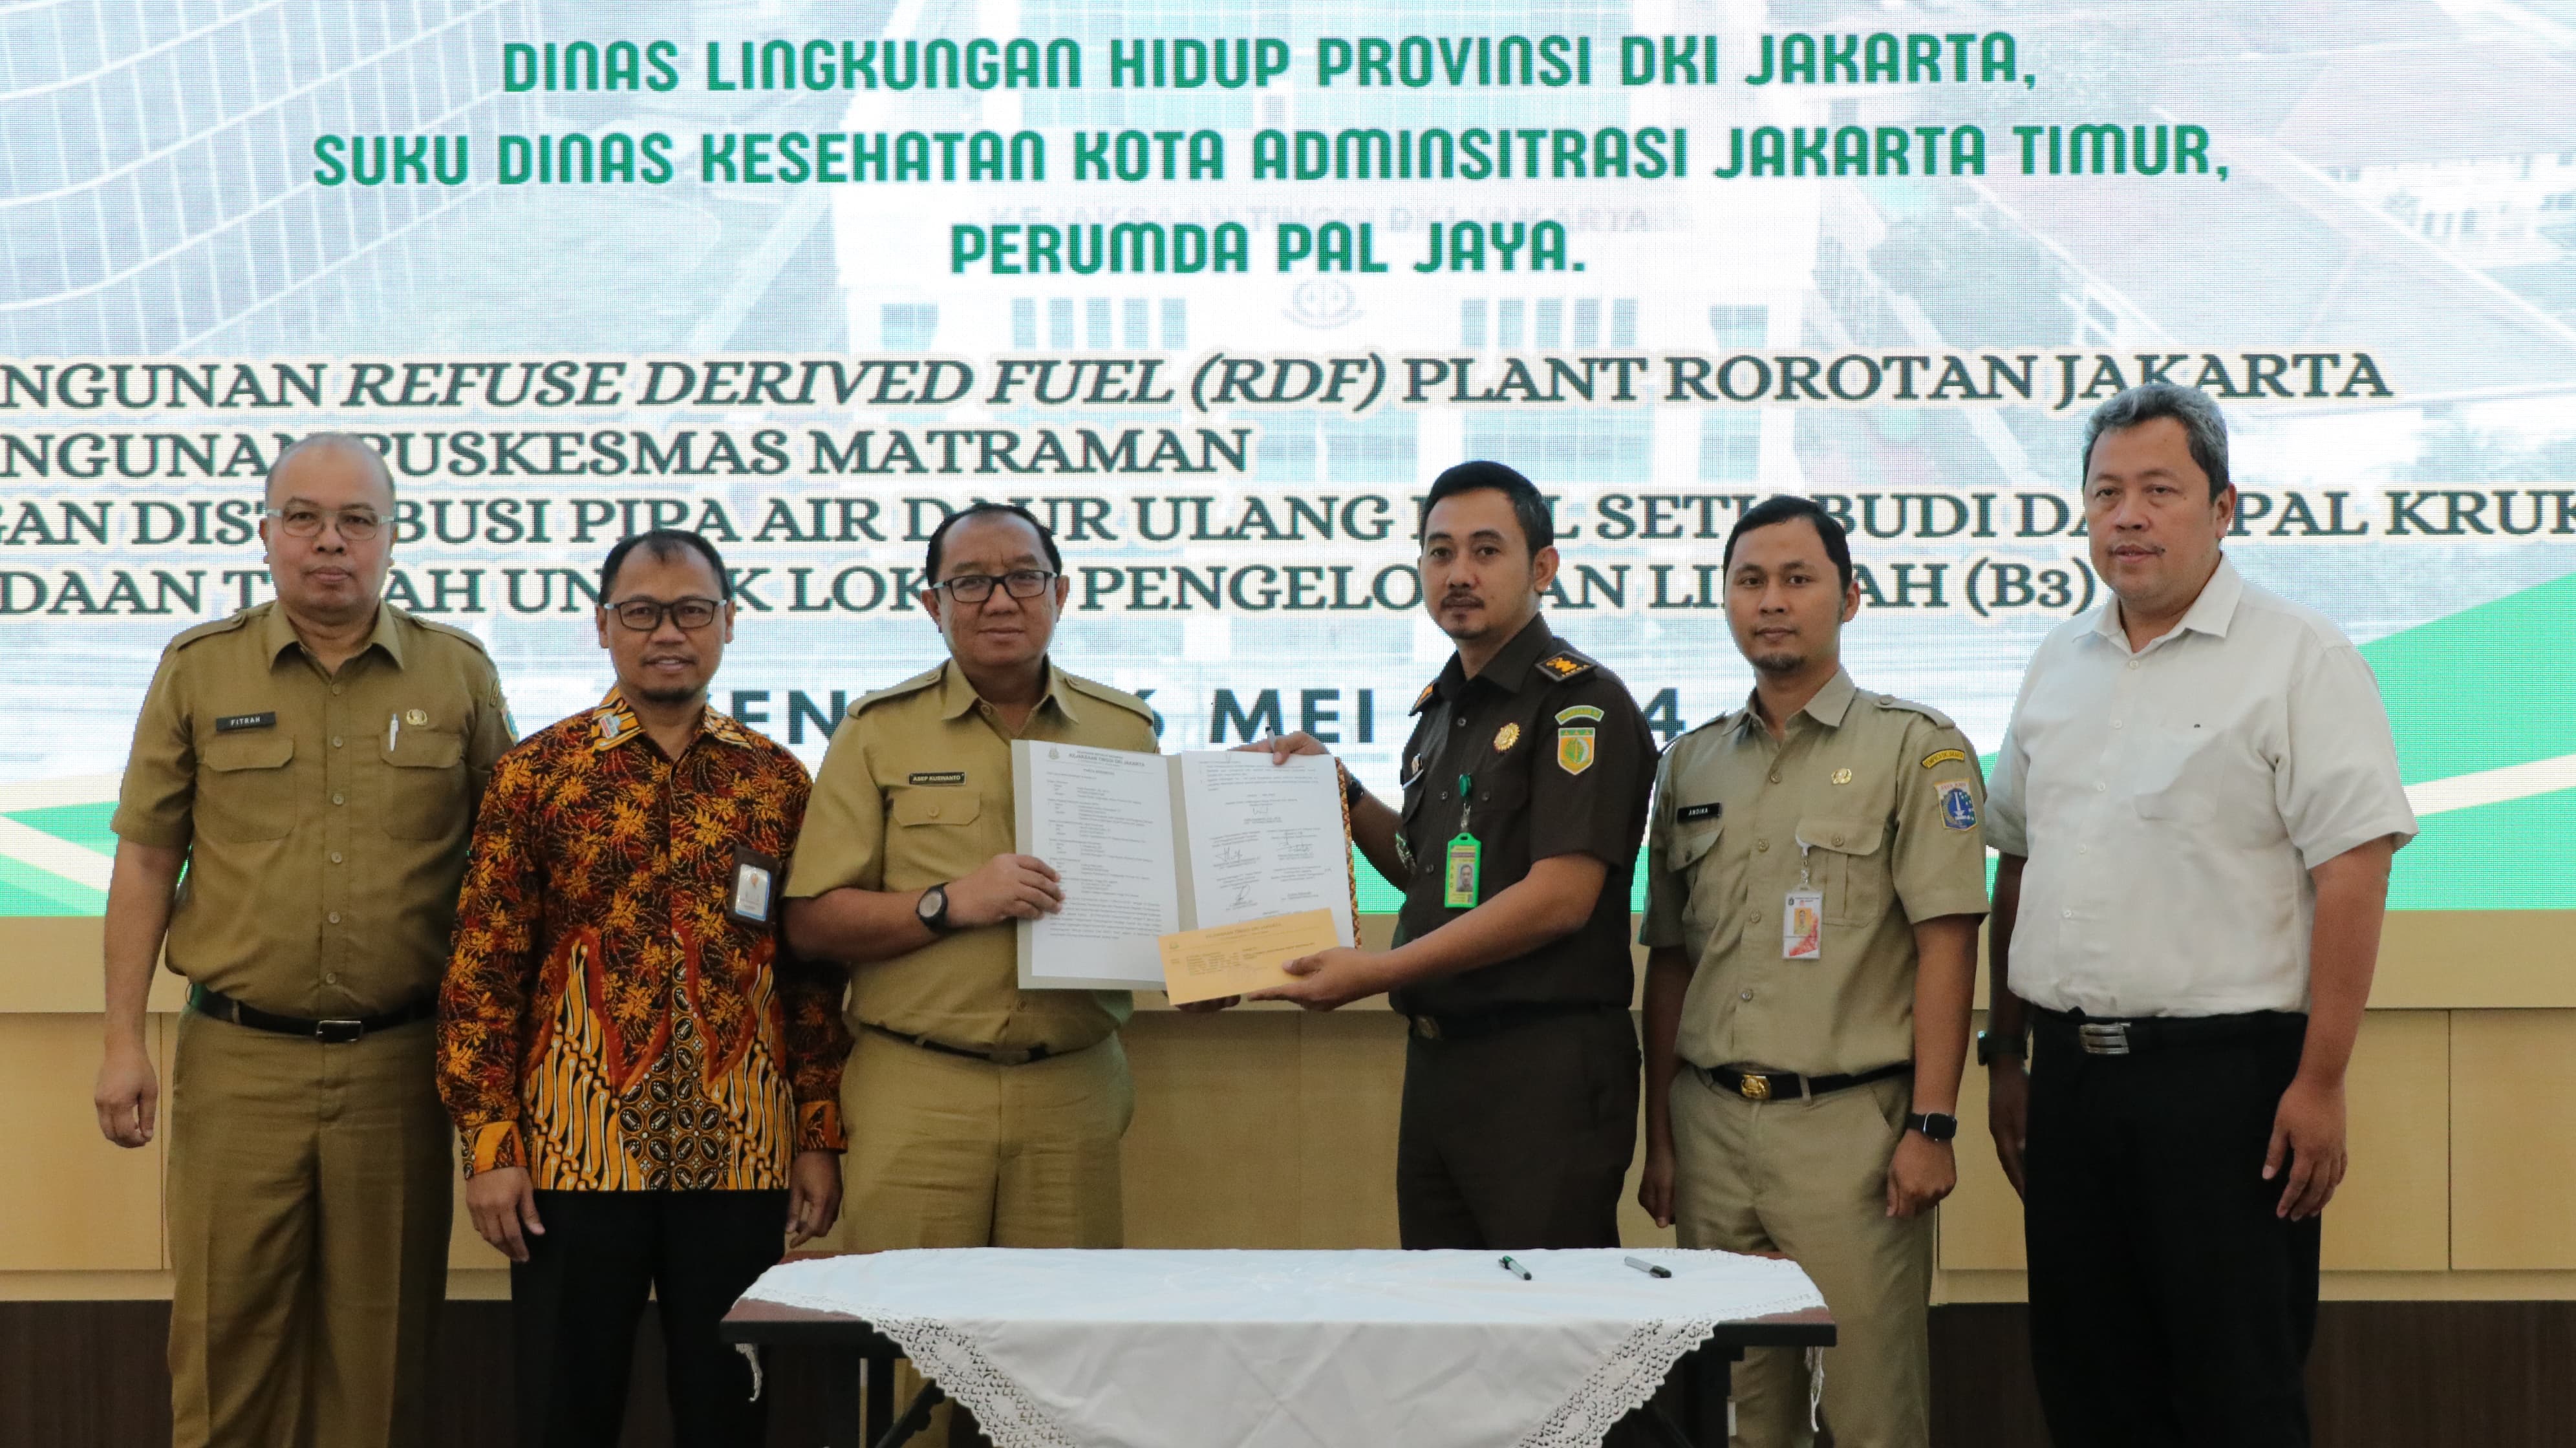 Kejati DKI Jakarta melaksanakan Entry Meeting (Rapat Pendahuluan) dan Penandatanganan Pakta Integritas